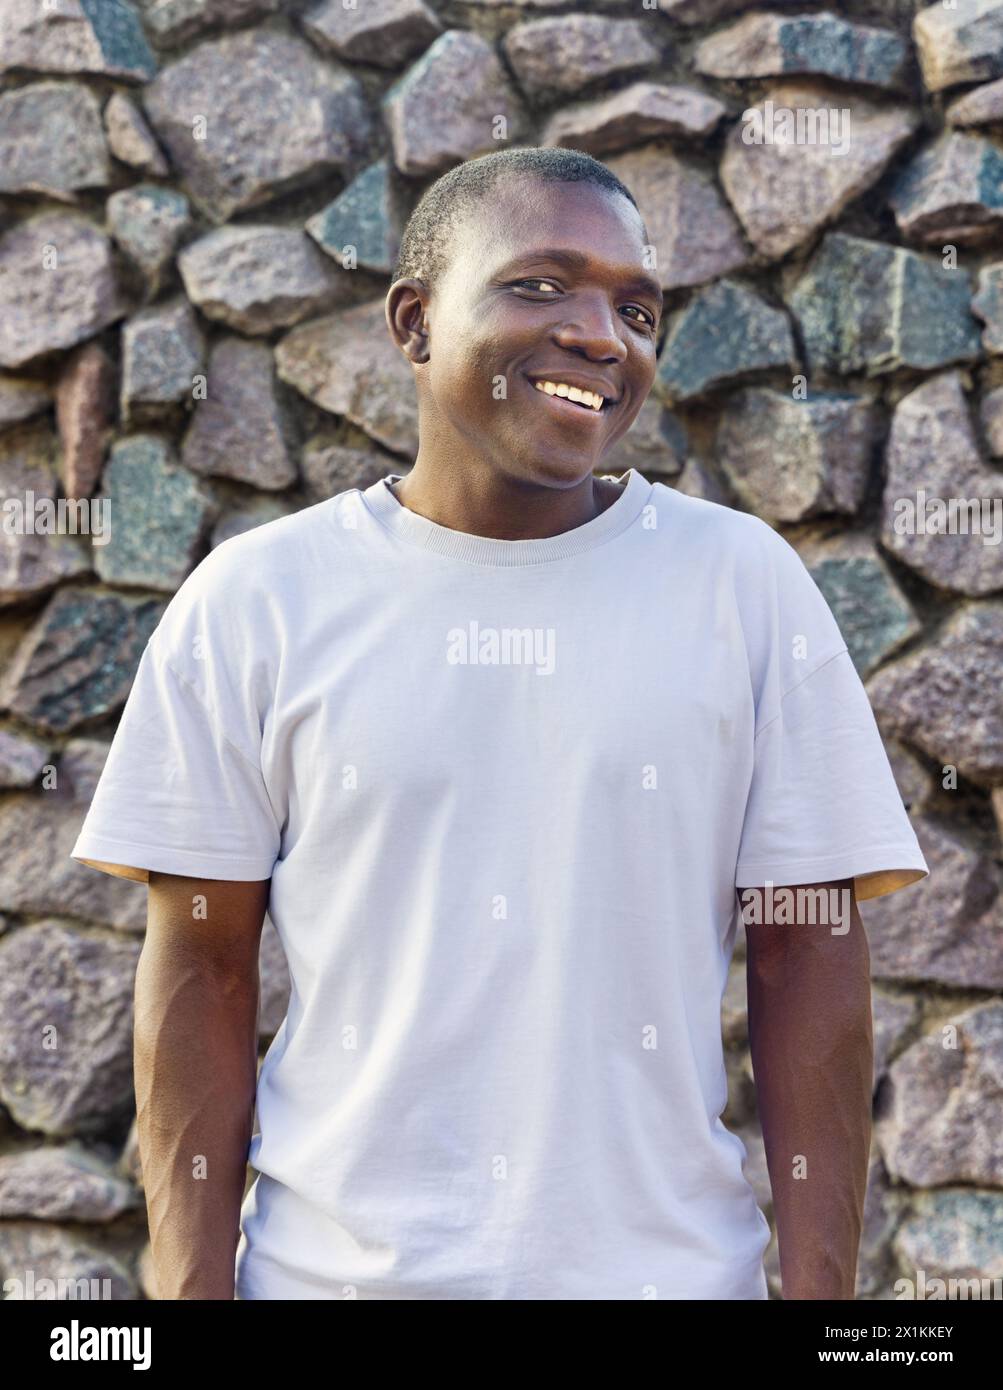 giovane africano sorridente con abbigliamento casual, sfondo in pietra Foto Stock